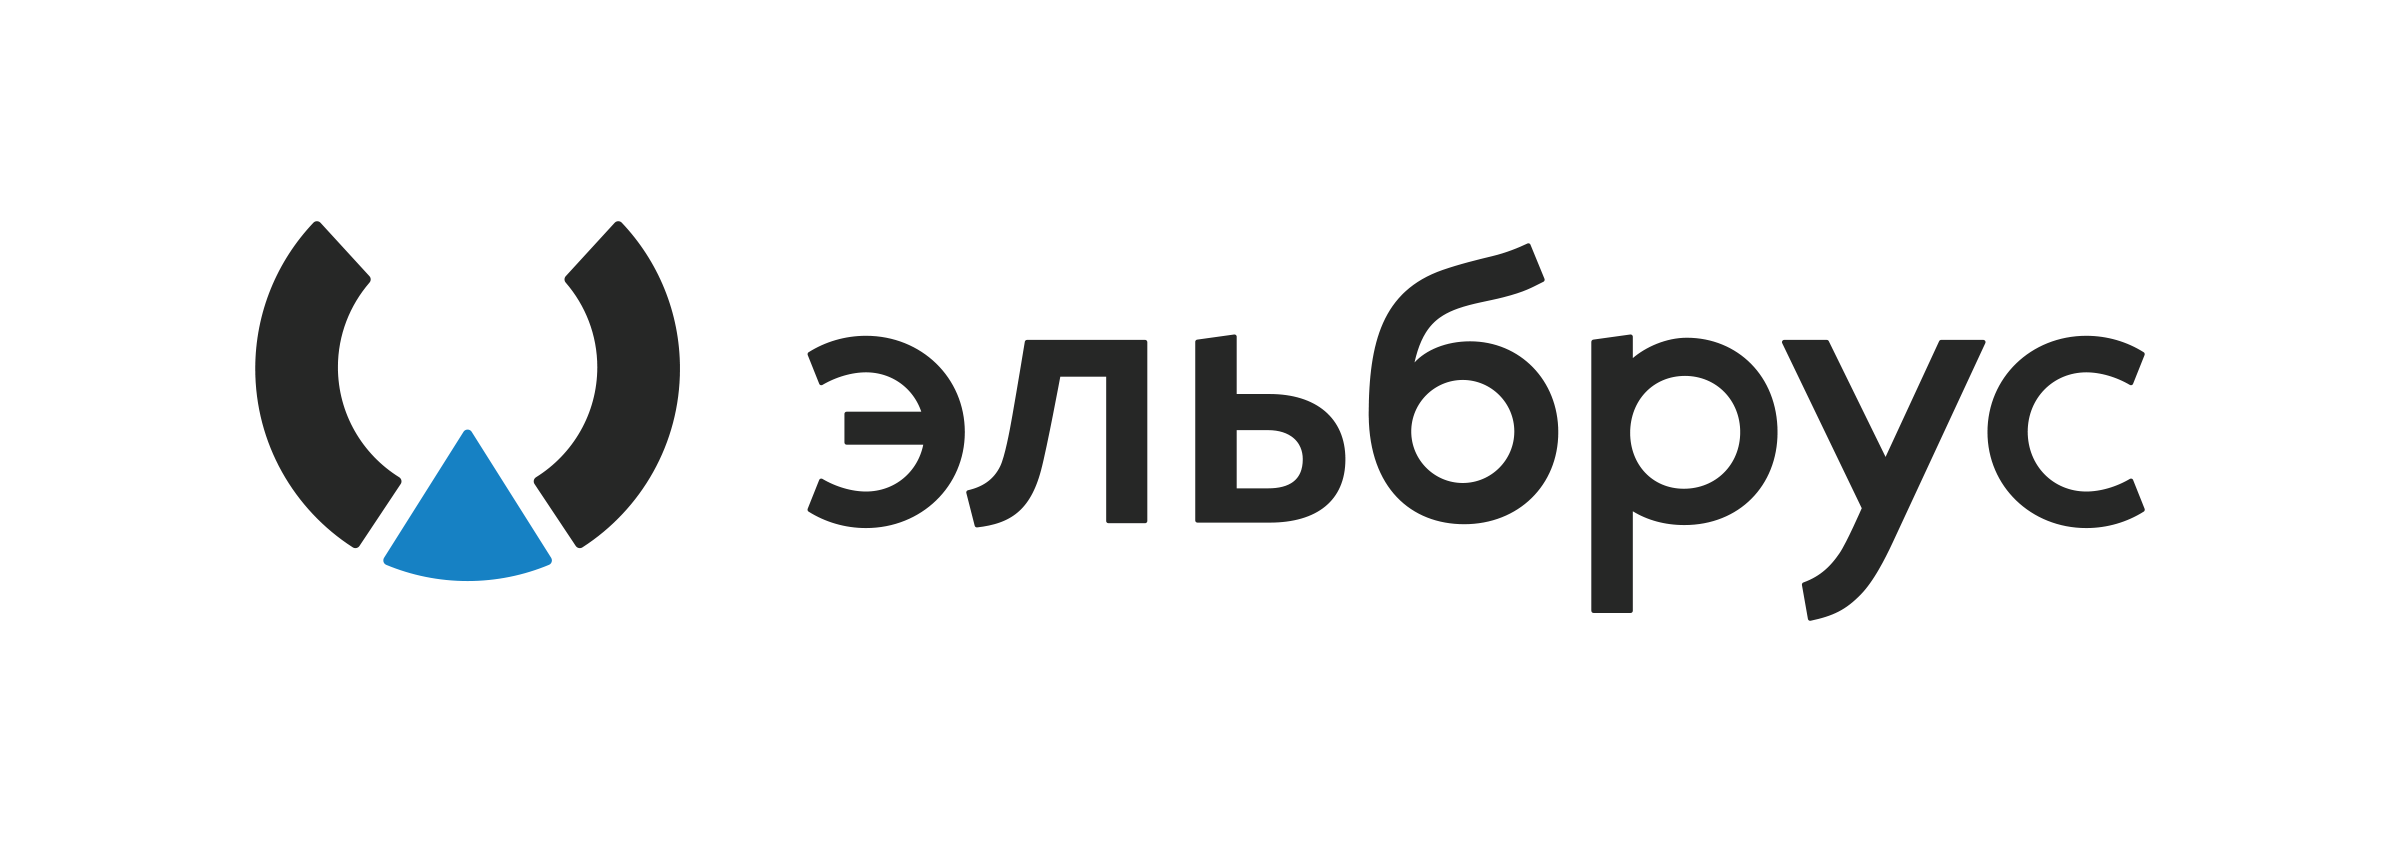 Эльбрус логотип. Эльбрус процессор логотип. АО МЦСТ Эльбрус. Операционная система Эльбрус логотип. МЦСТ Эльбрус логотип.